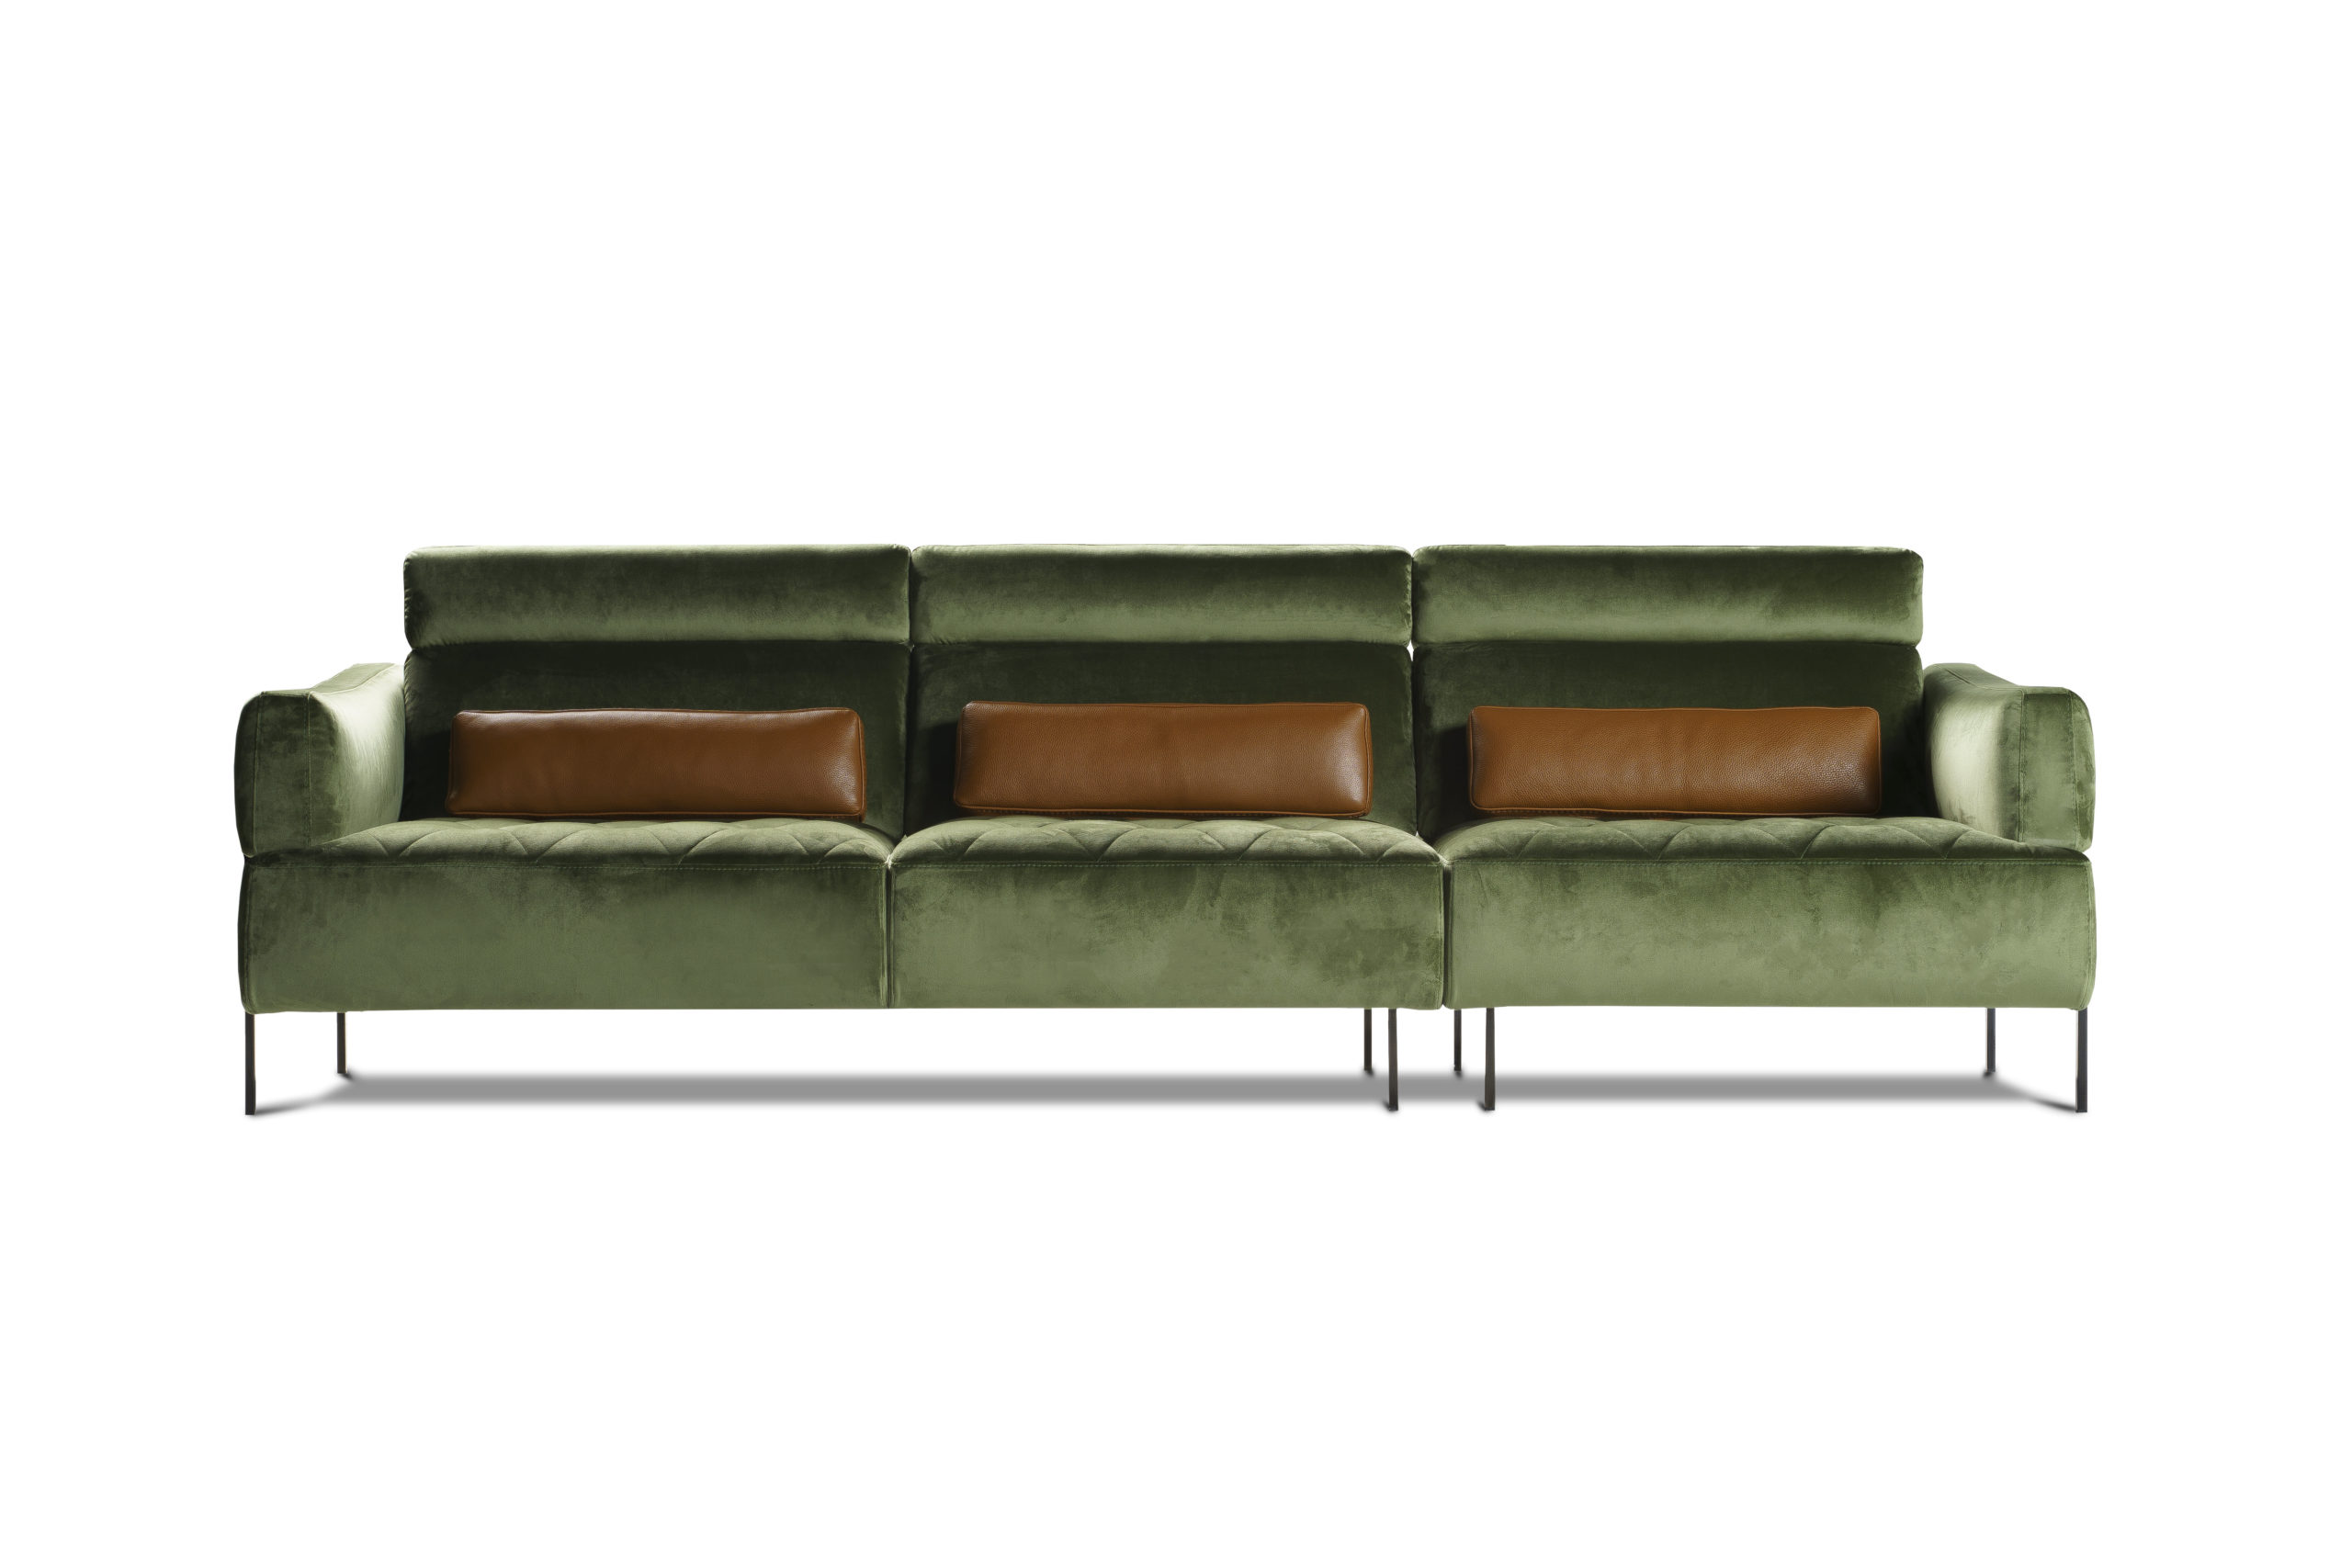 Divani Nicoletti Home relax recliner sofa divani letto presso Marinelli Design Group